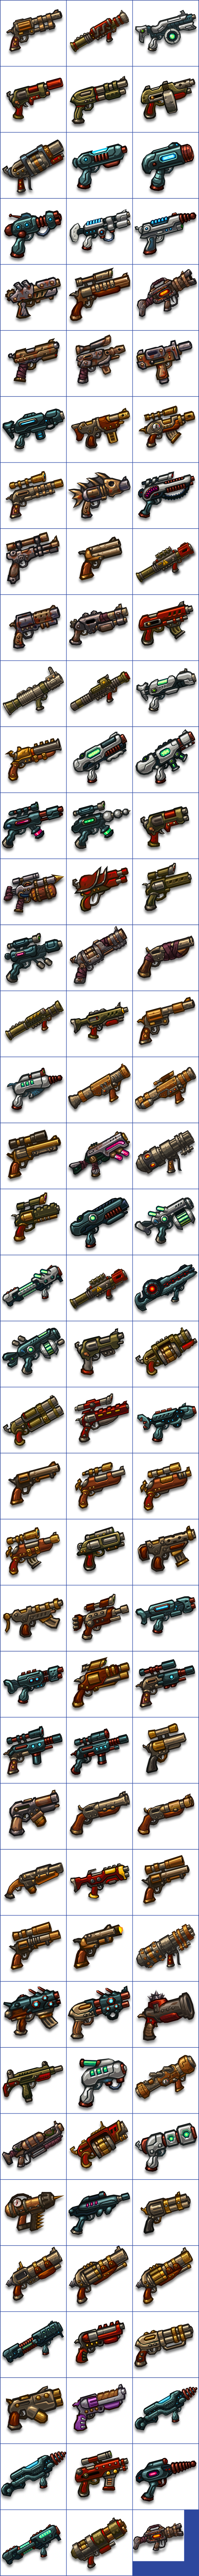 SteamWorld Heist - Weapon Icons